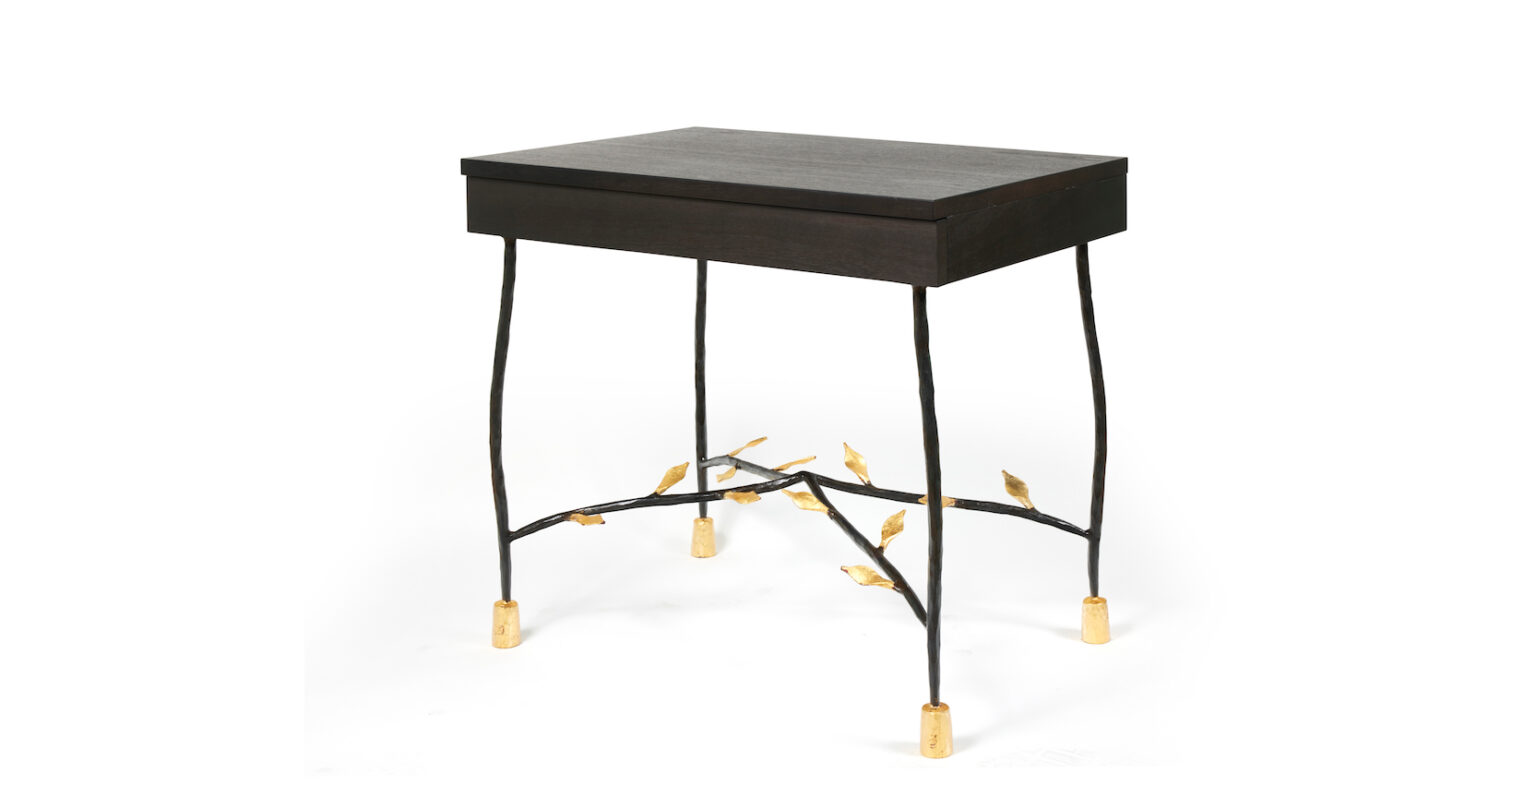 garouste et bonetti, petite table rectangulaire aux pieds en fer forgé avec des feuilles dorées, plateau en bois fonçé